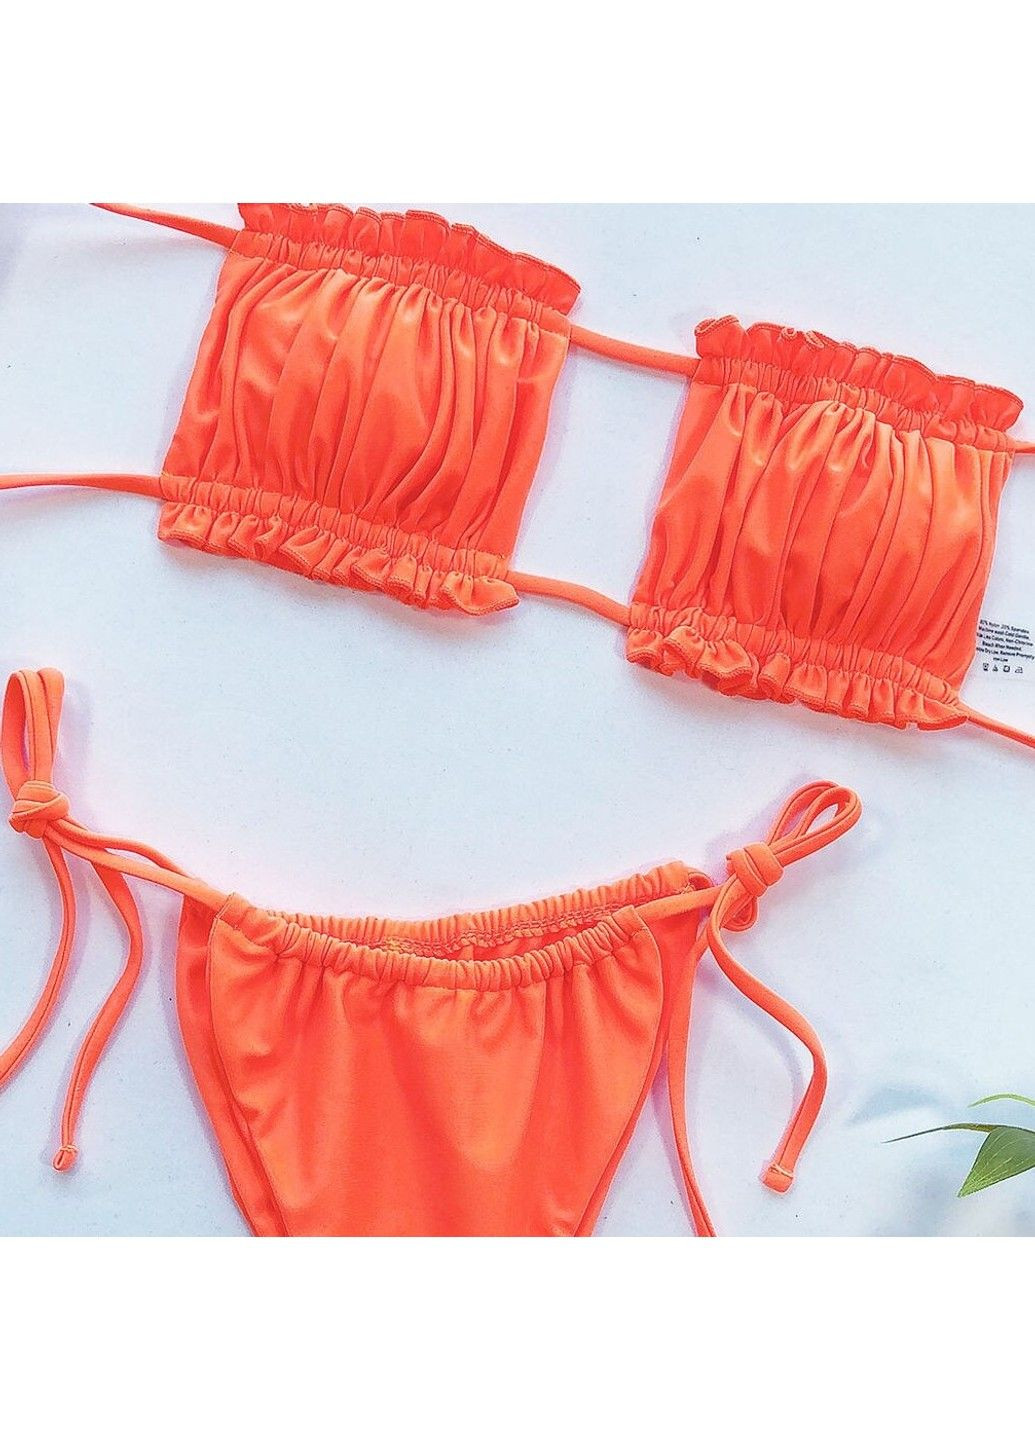 Оранжевый купальник раздельный шторки с завязками оранжевый No Brand